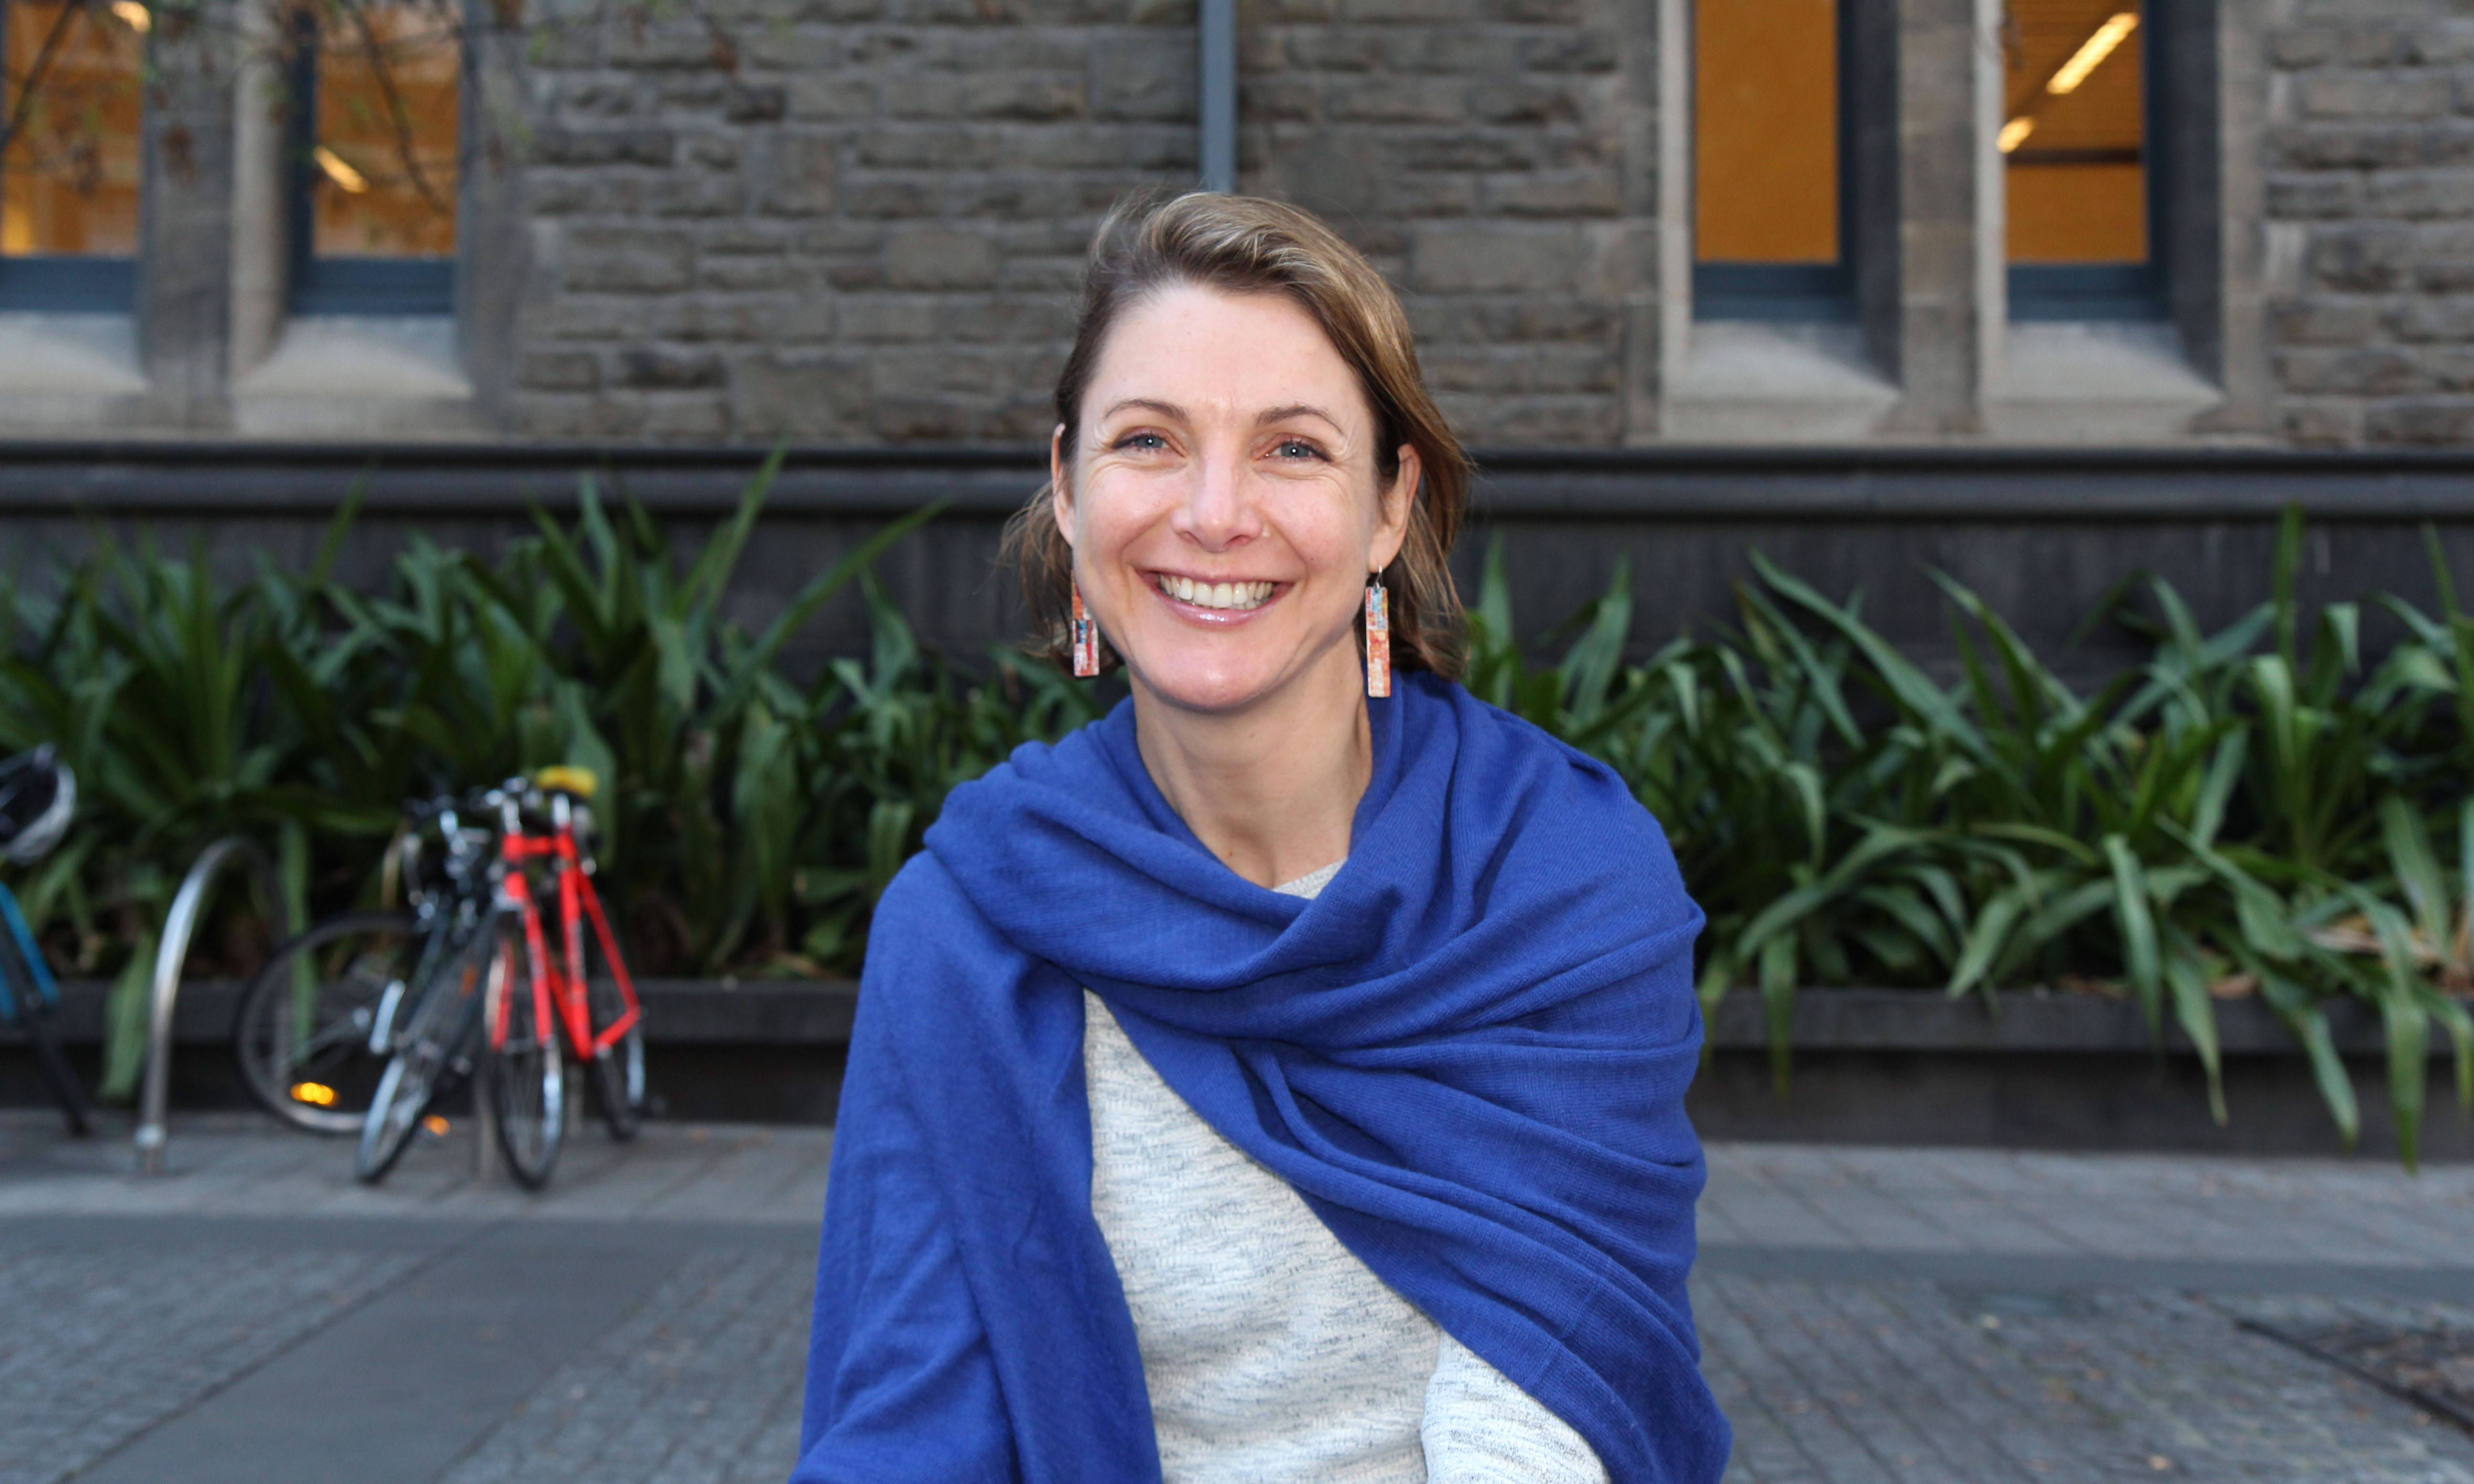 Phó giáo sư Lauren Rickards hiện đang làm việc tại Trung tâm Nghiên cứu đô thị ở Melbourne và tập trung nghiên cứu các yếu tố xã hội của vấn đề môi trường, trong đó có biến đổi khí hậu.